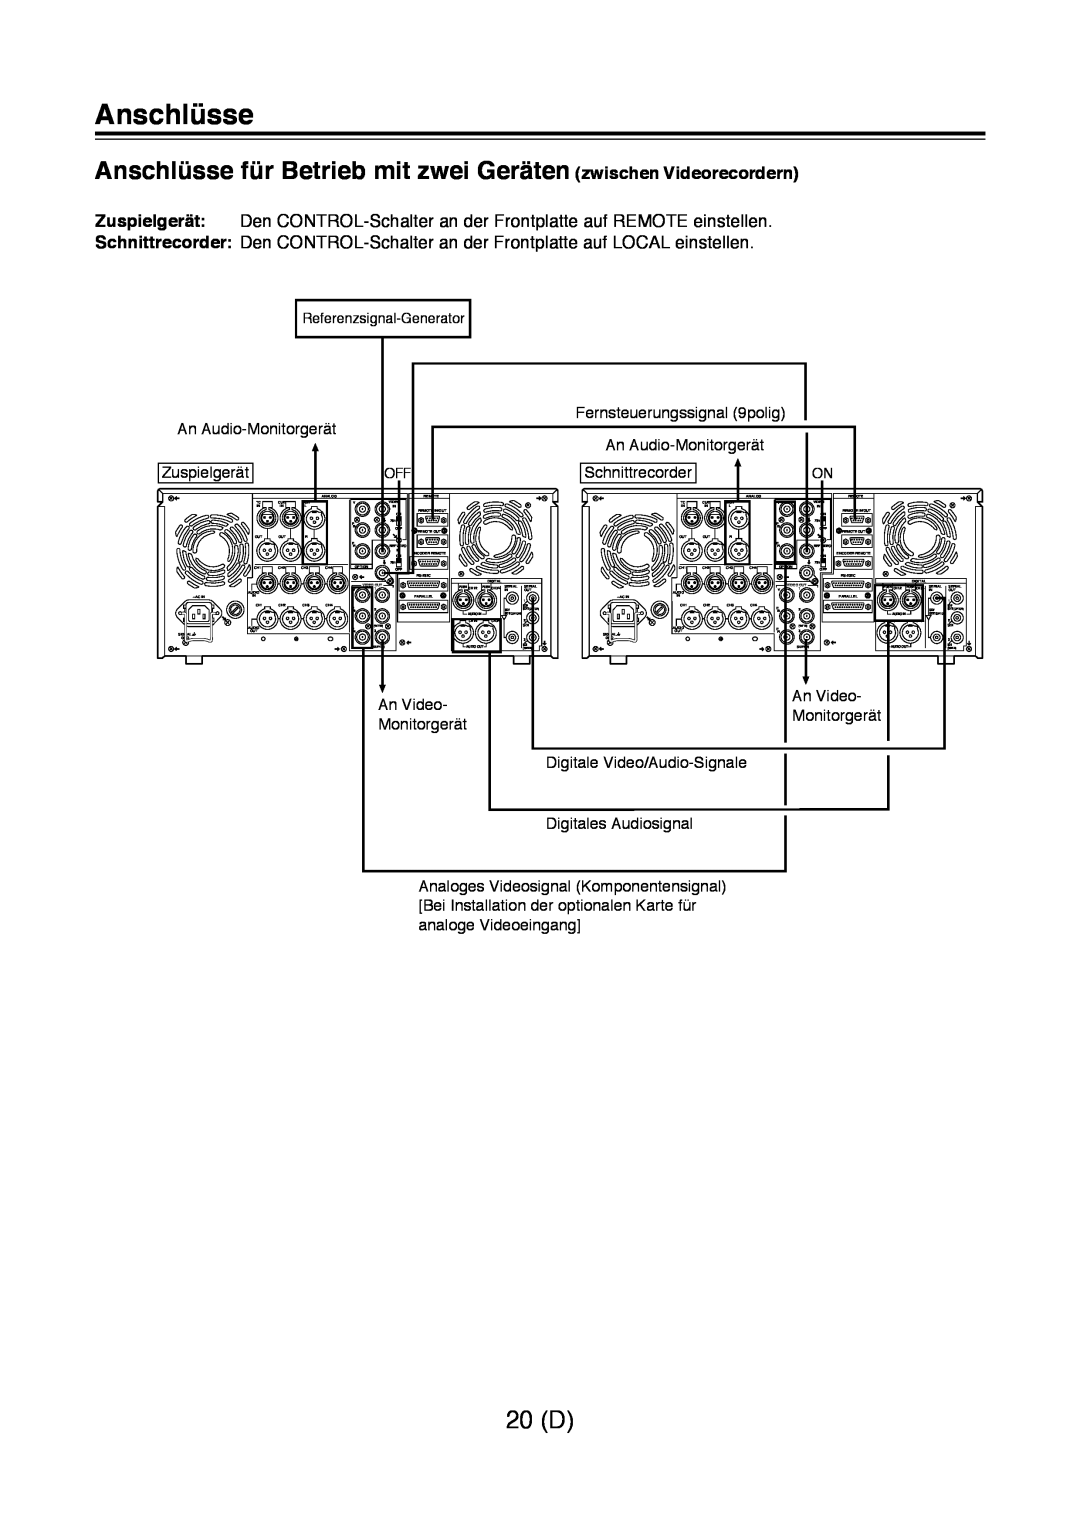 Panasonic AJ-D960 operating instructions Anschlüsse für Betrieb mit zwei Geräten zwischen Videorecordern, 20 D 